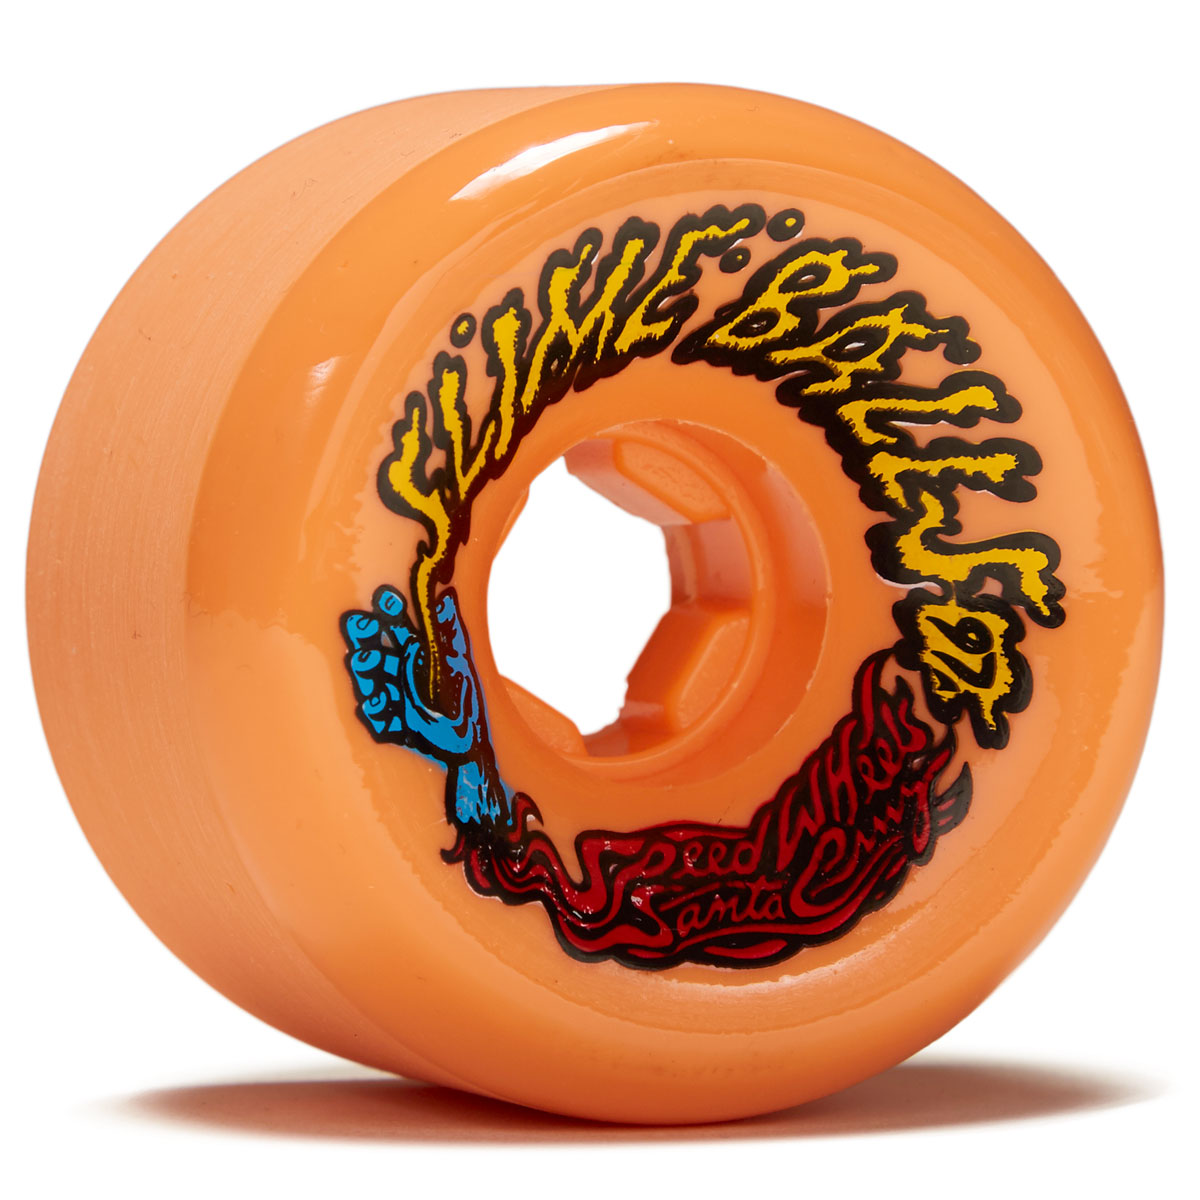 Slime Balls Vomits 97a Skateboard Wheels - Orange/Blue - 60mm image 1